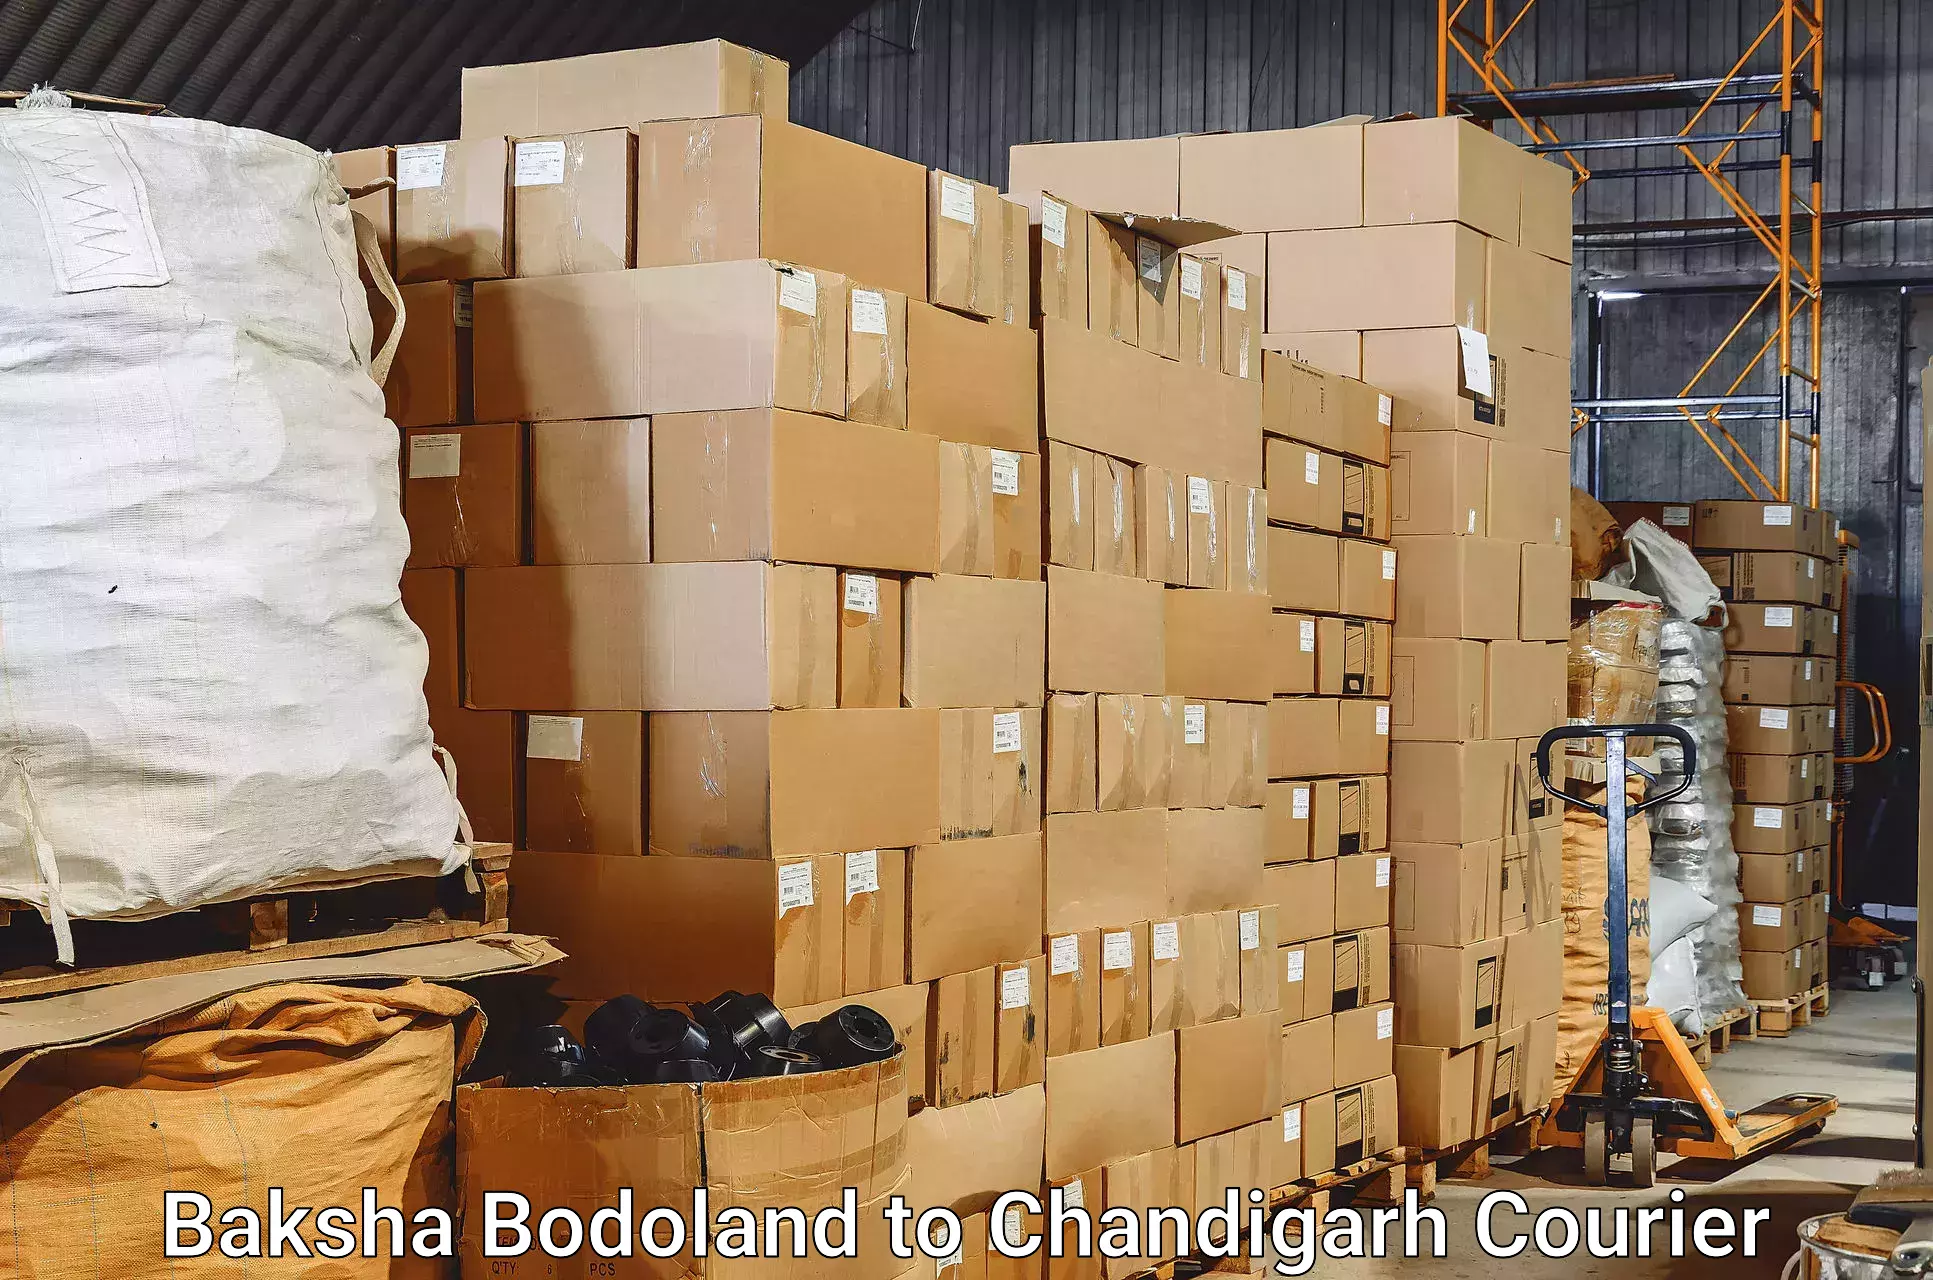 Automated luggage transport Baksha Bodoland to Chandigarh